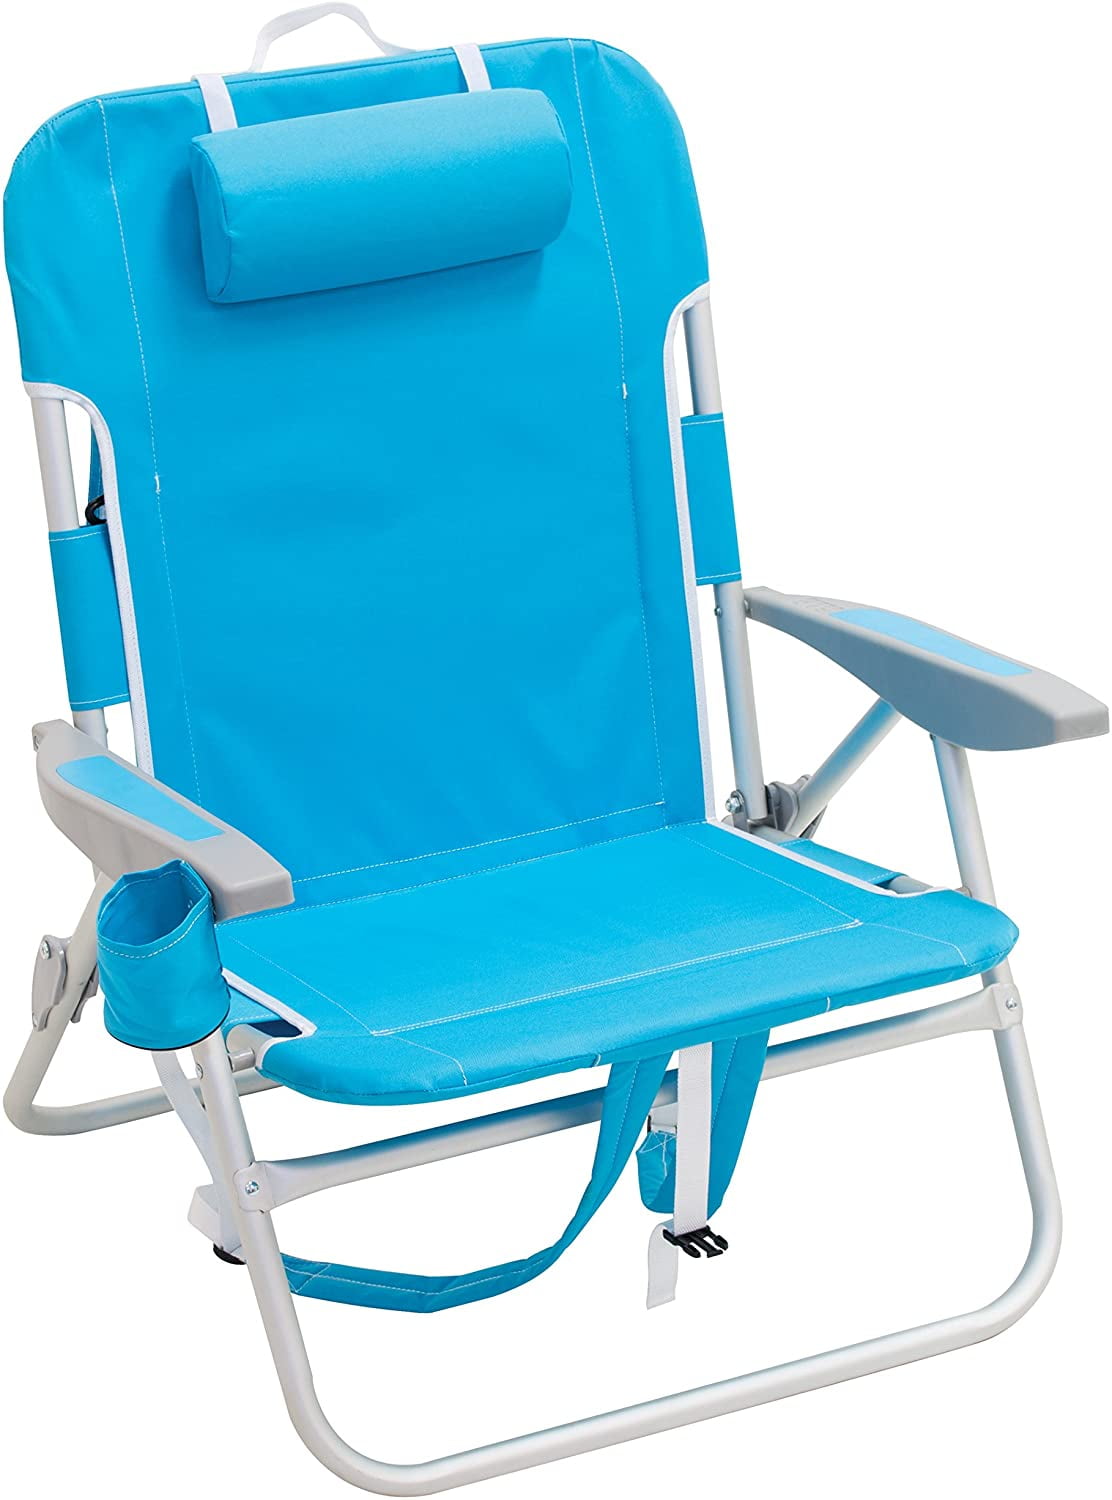 Rio Gear Beach Chair Hot Sale, 59% OFF | www.gruposincom.es